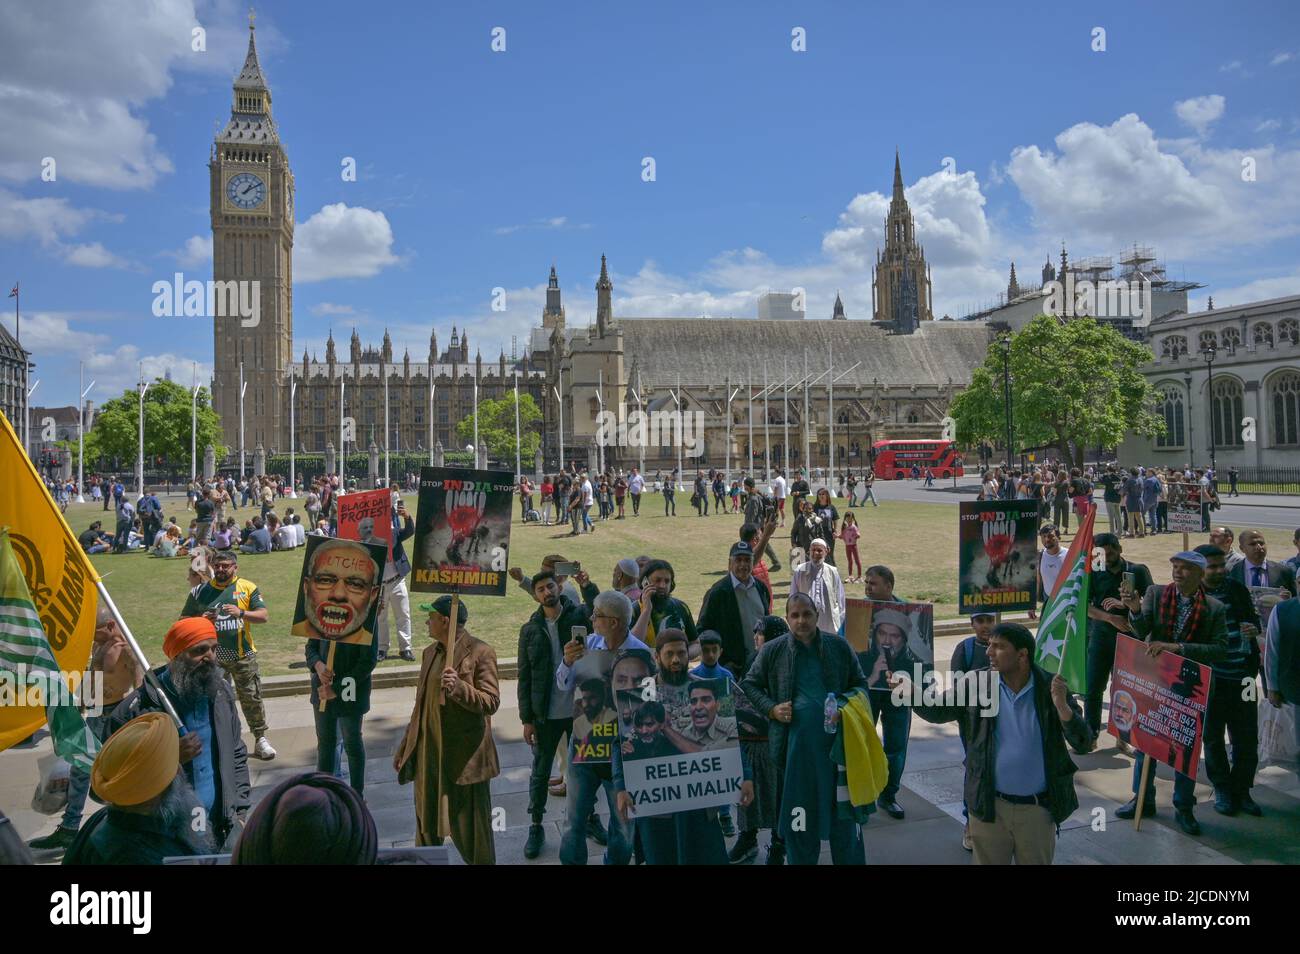 Londres, Reino Unido, 12/06/2022, protesta de la comunidad de Kashmiris para exigir la liberación de Yasin Malik es una lucha independiente de Cachemira por la libertad de Cachemira y otros prisioneros de Kashmiri detenidos en cárceles indias chutnig India torturadores marchan a Downing street hacia la Alta Comisión India, Londres, Reino Unido. - 12 de junio de 2022. Foto de stock